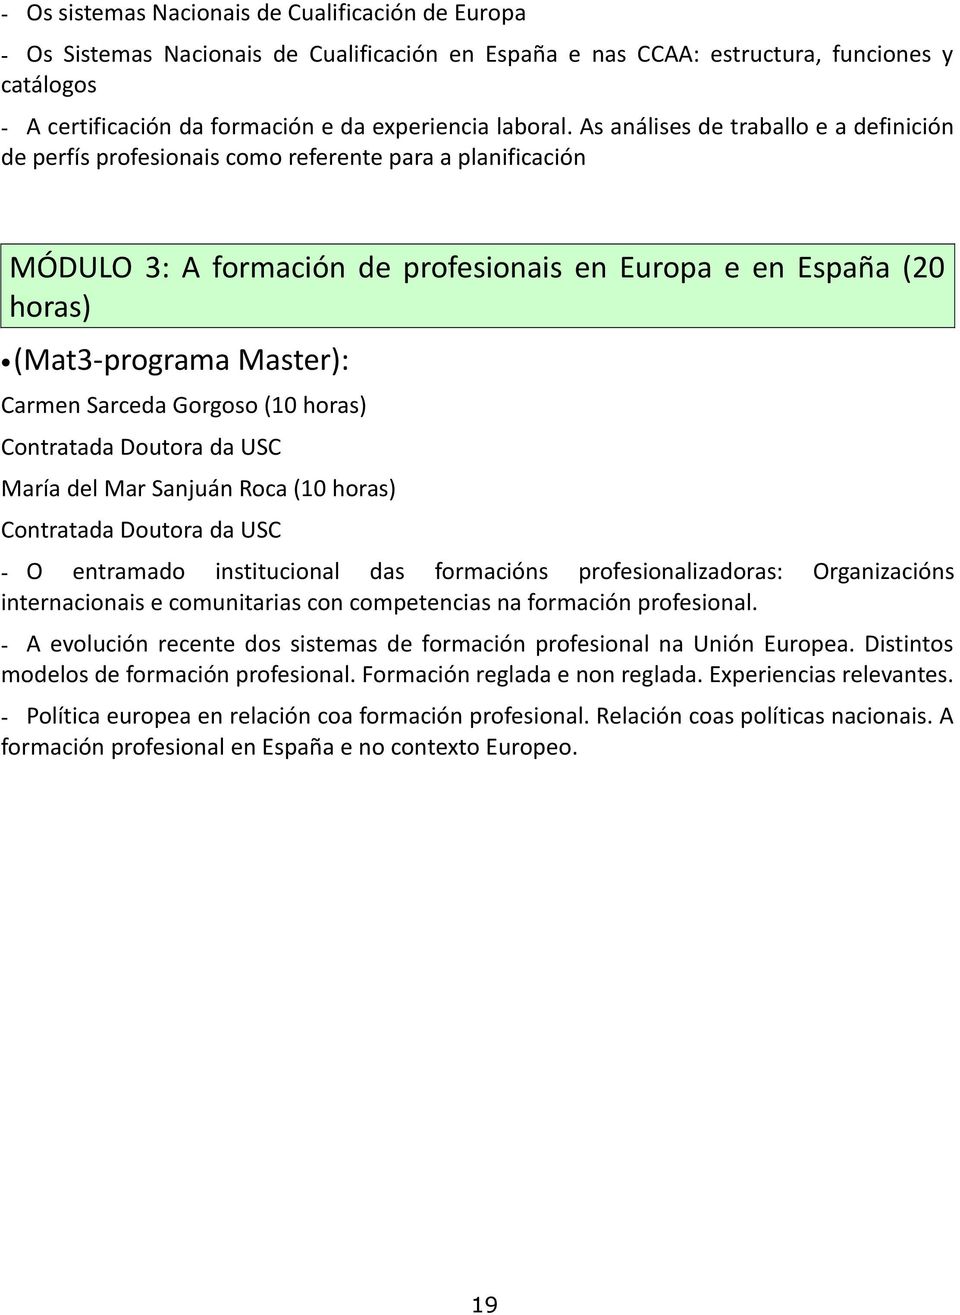 As análises de traballo e a definición de perfís profesionais como referente para a planificación MÓDULO 3: A formación de profesionais en Europa e en España (20 horas) (Mat3-programa Master): Carmen